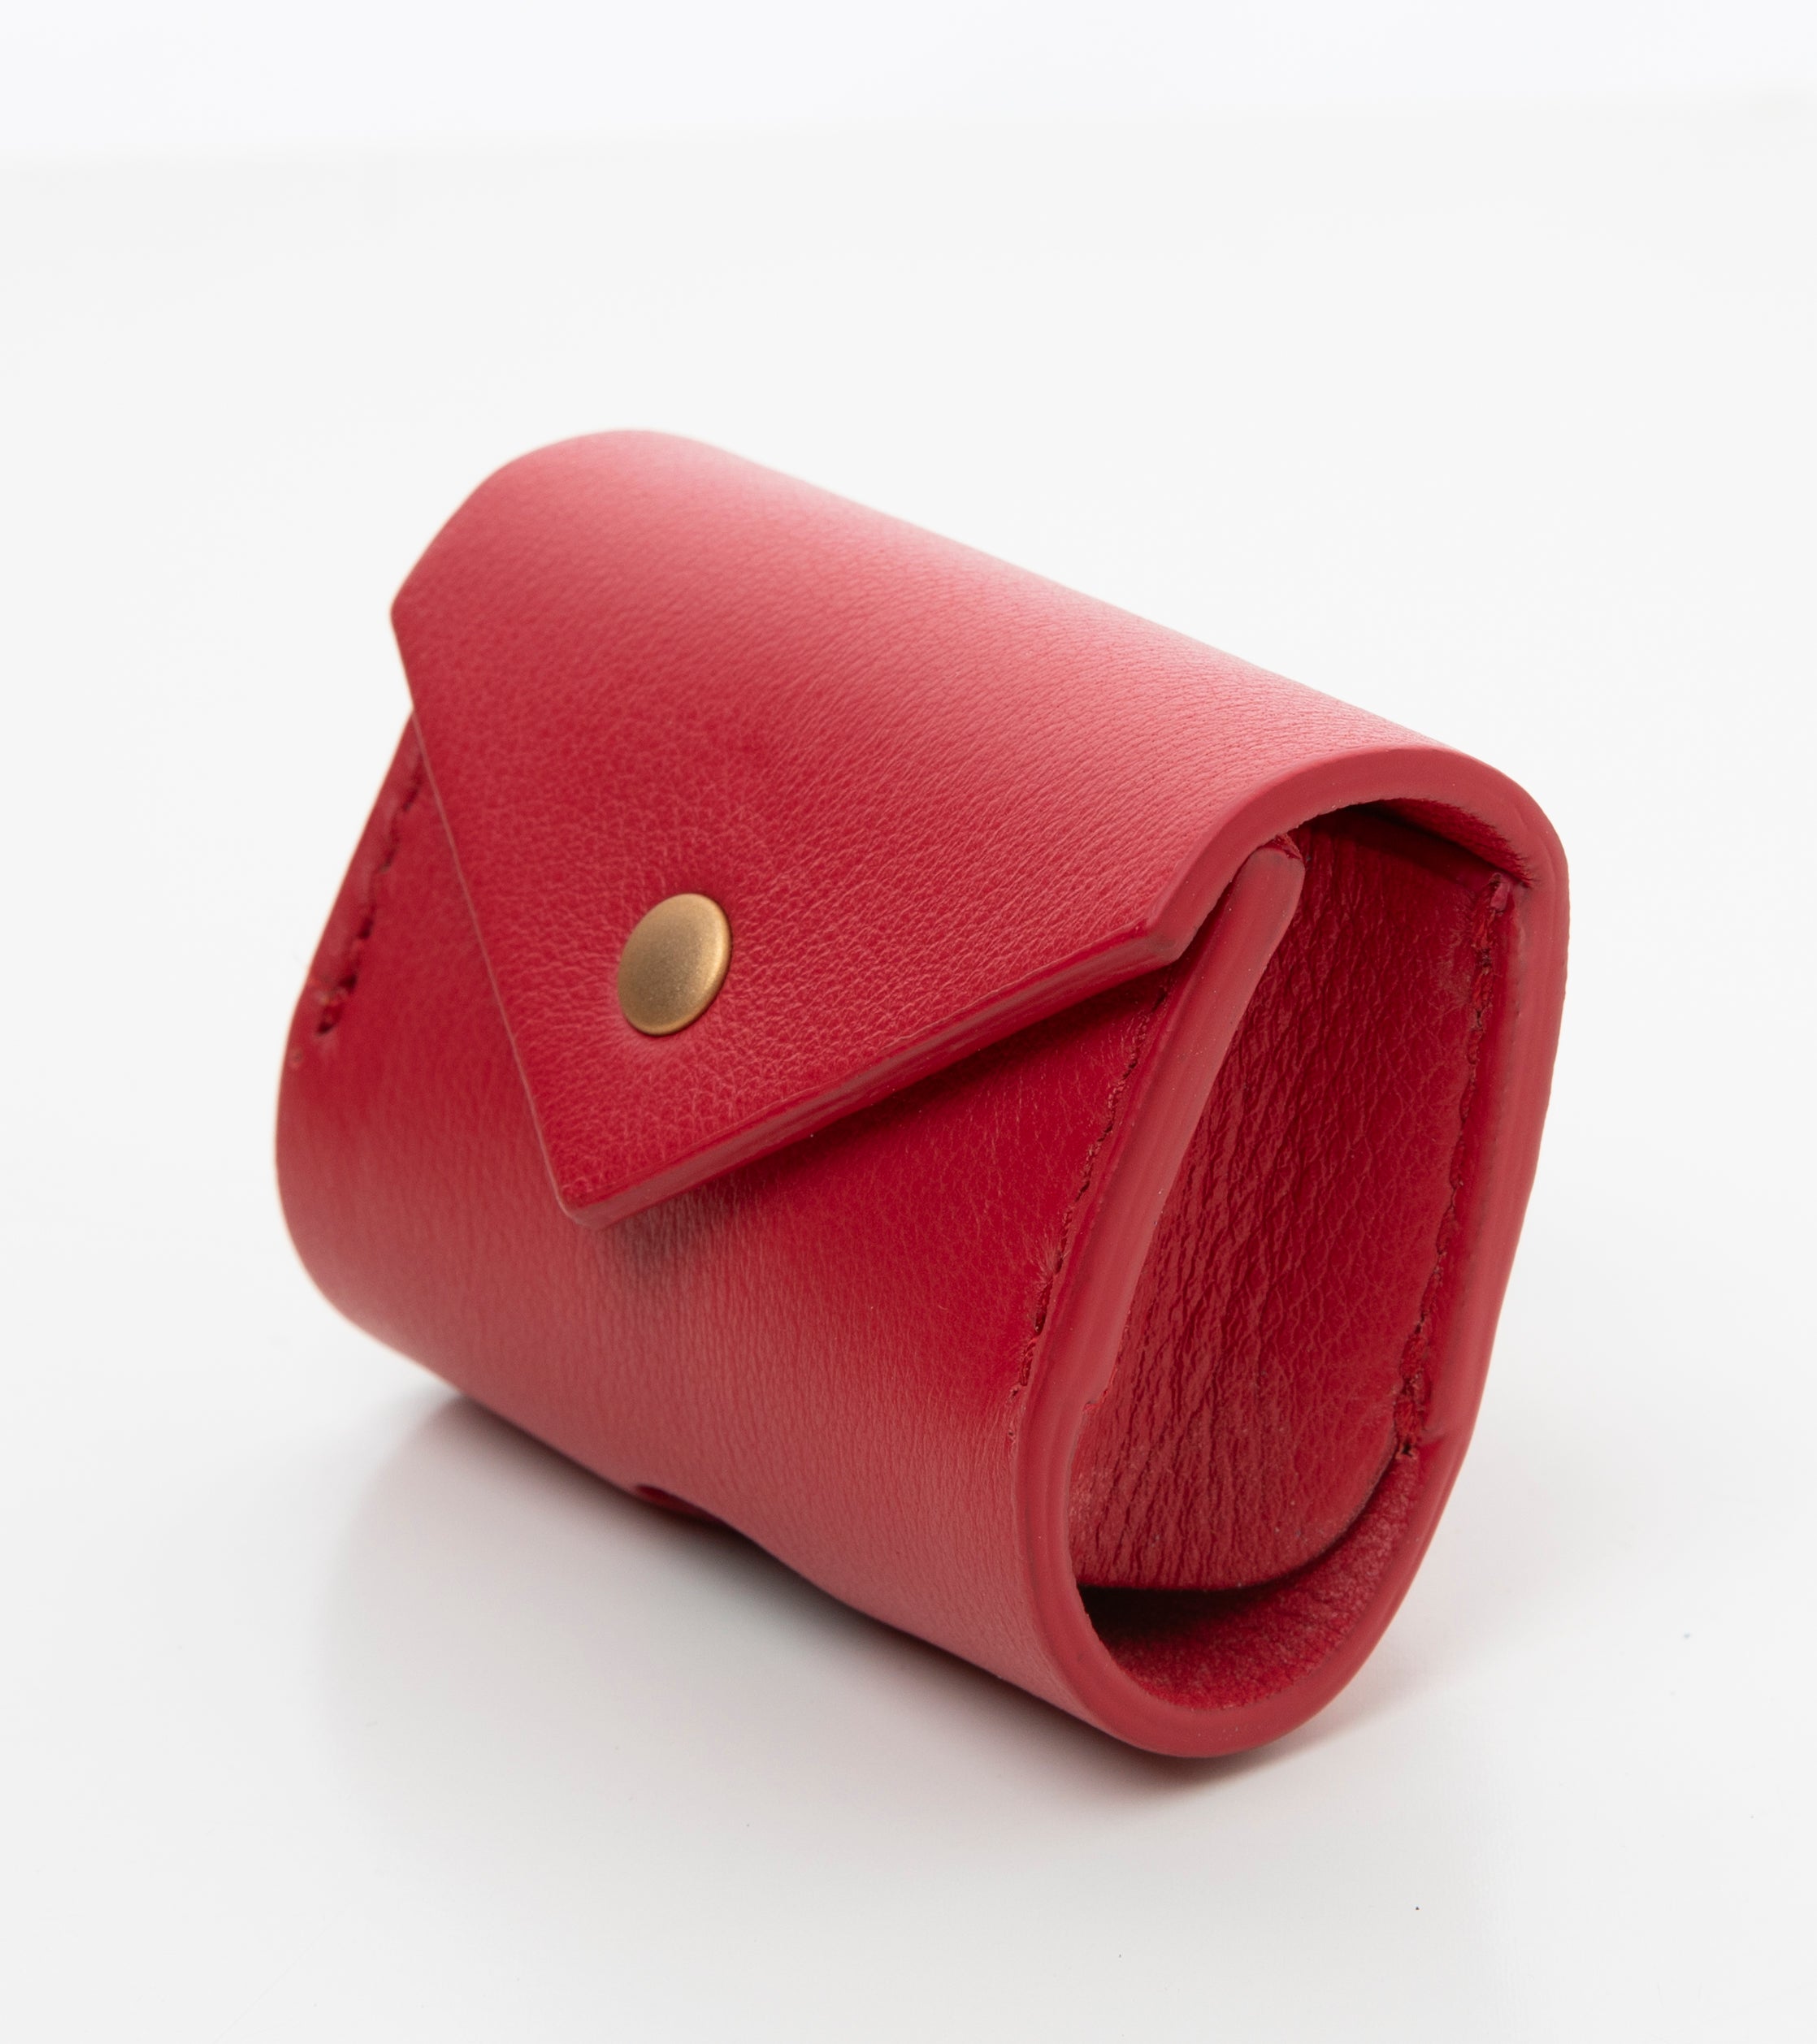 red-leather-poop-bag-holder-2.jpg